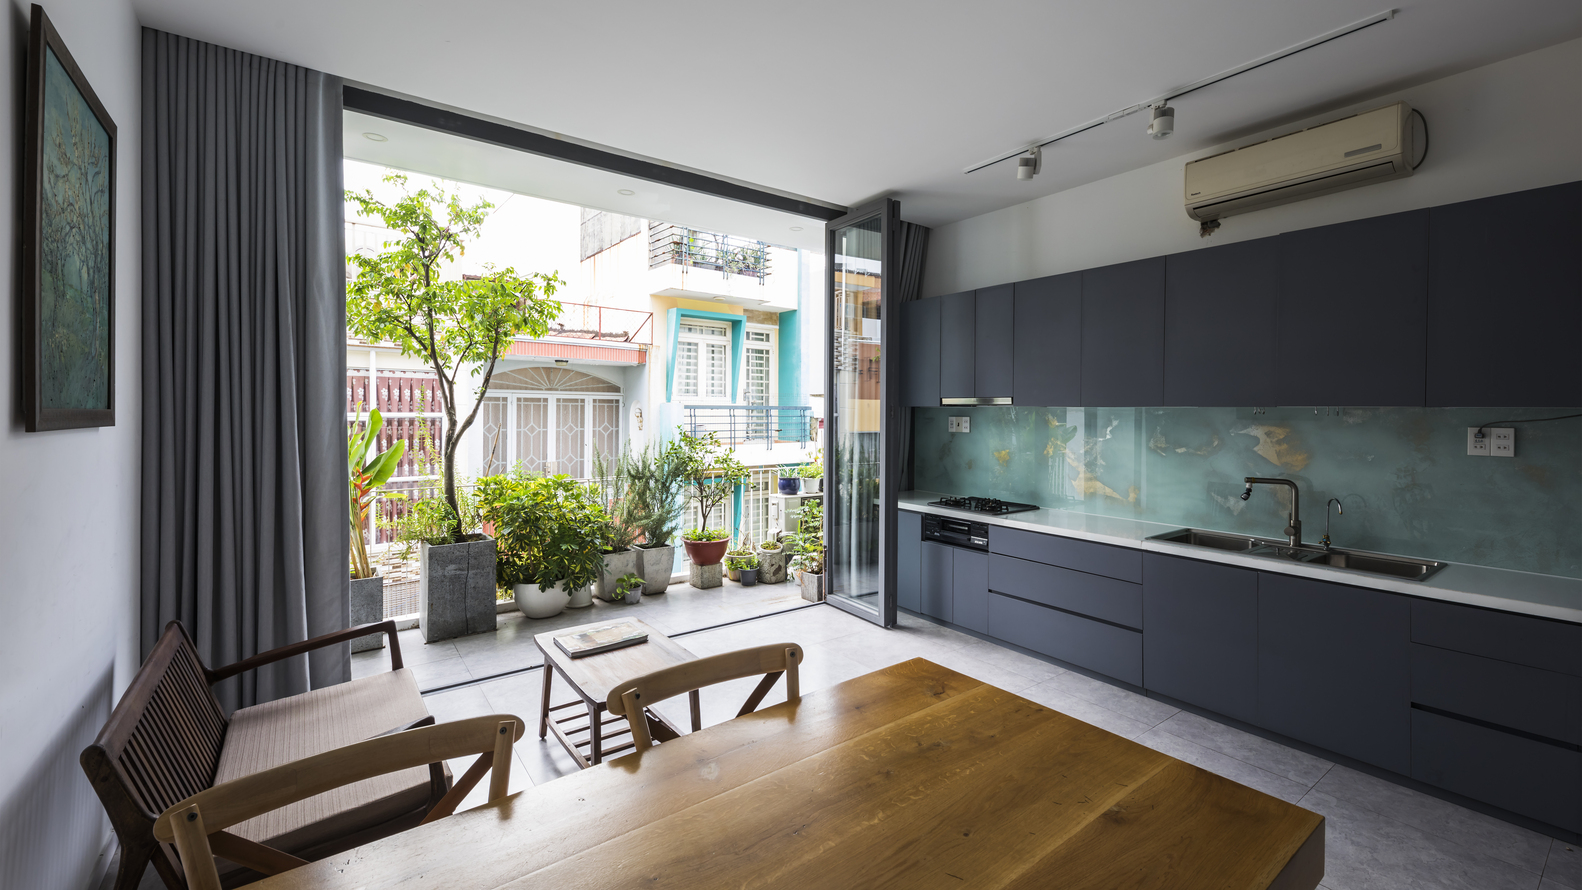 hình ảnh toàn cảnh phòng bếp ăn nhà phố 4 tầng với tủ bếp màu xám đen, bàn ăn bằng gỗ, cửa kính lớn mở ra khoảng xanh trồng cây